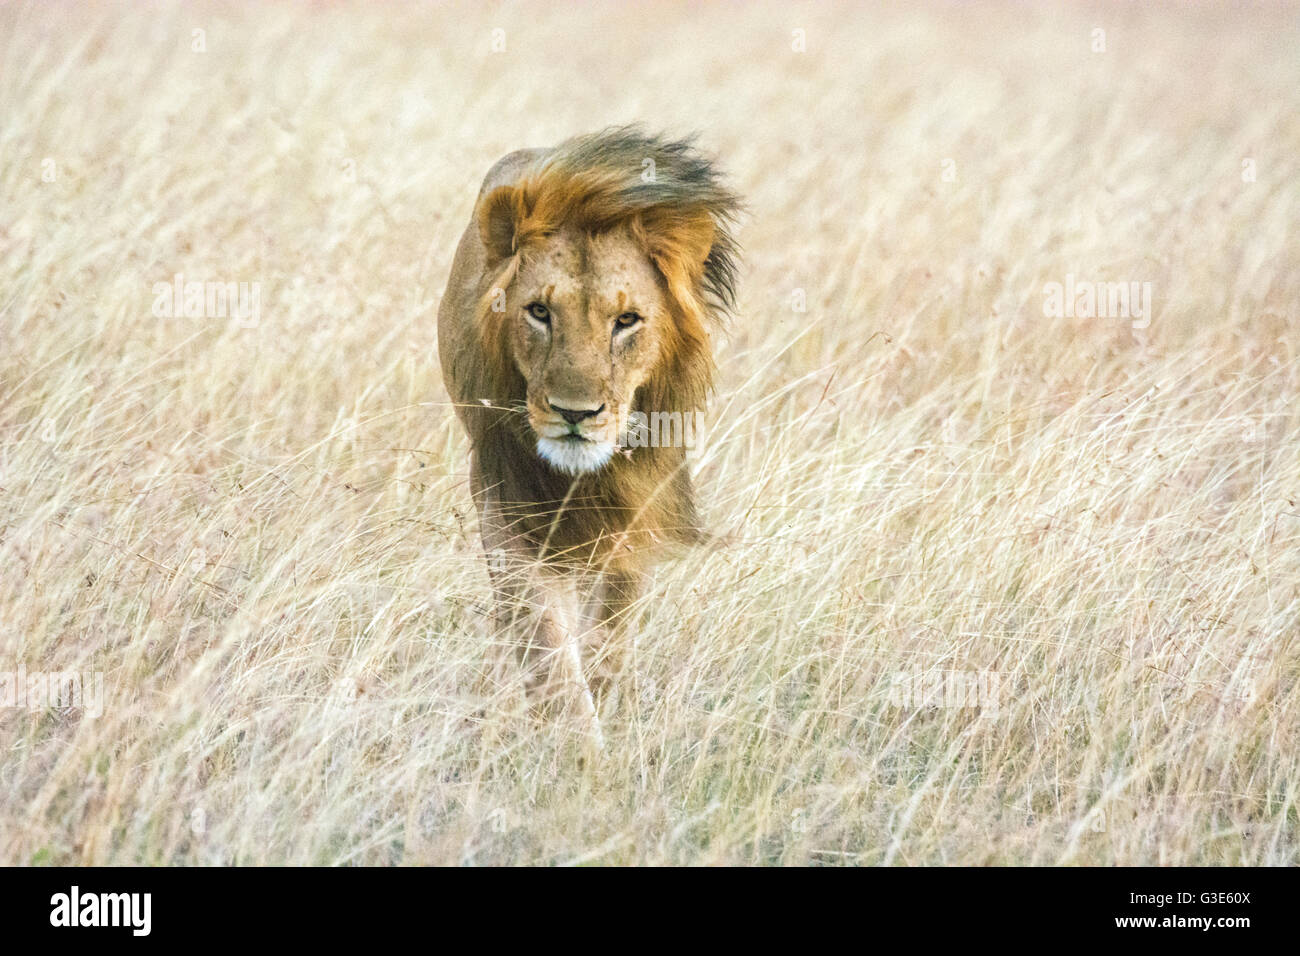 Erwachsenen Wild männlicher Löwe, Panthera Leo, zu Fuß durch langes Grass wind wehenden Mähne, Blick auf Kamera, Masai Mara National Reserve, Kenia, Afrika Stockfoto